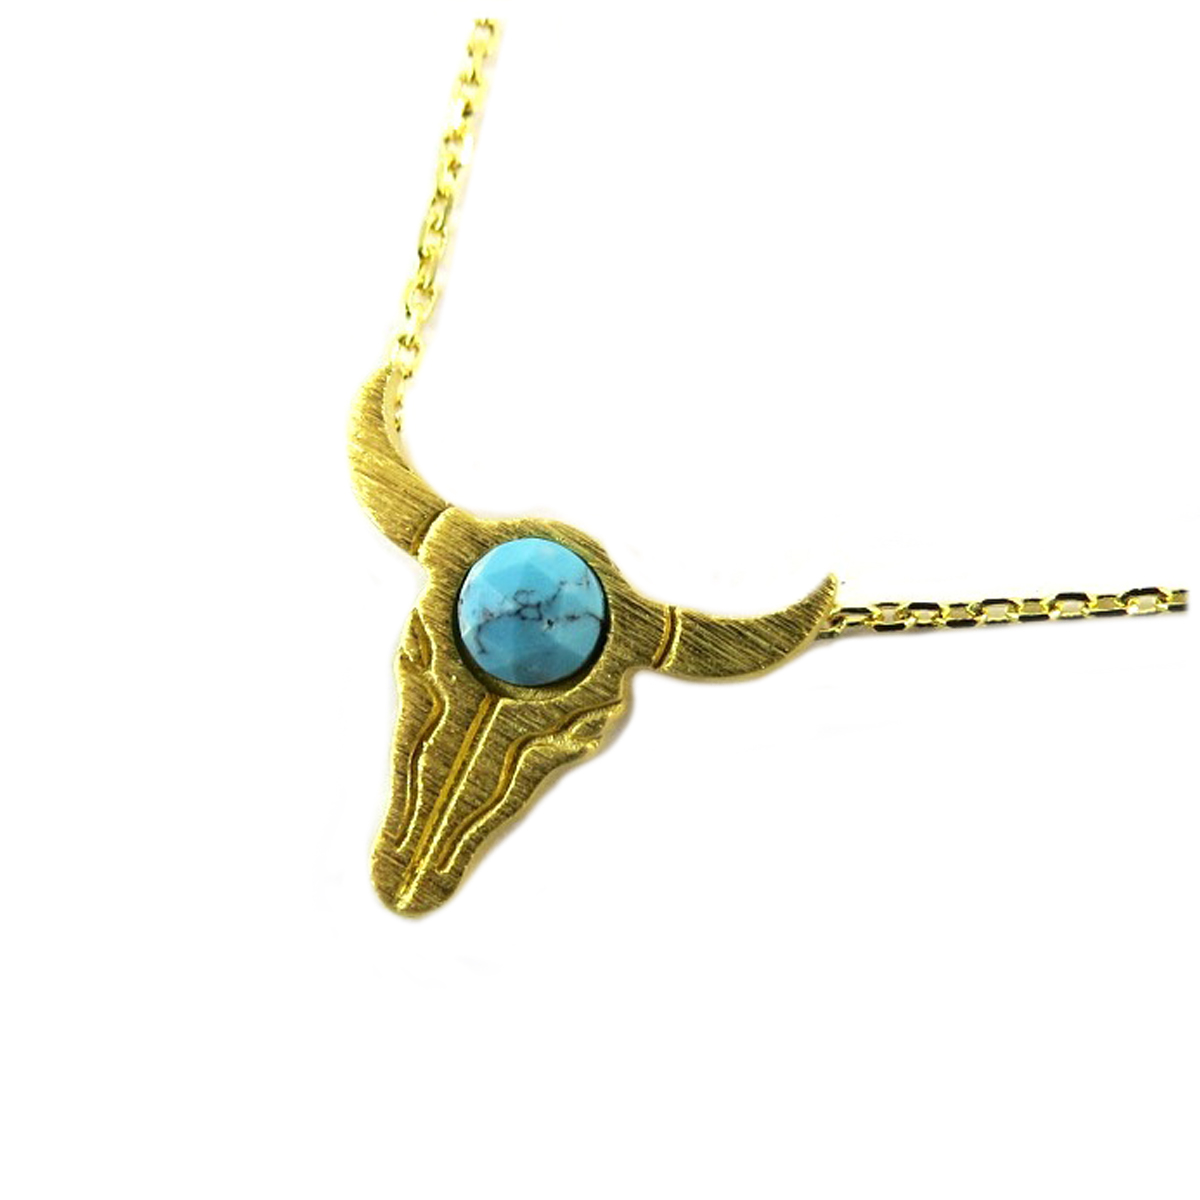 Collier artisanal \'Boho\' (crâne de bison) turquoise doré - 15x15 mm - [Q1513]